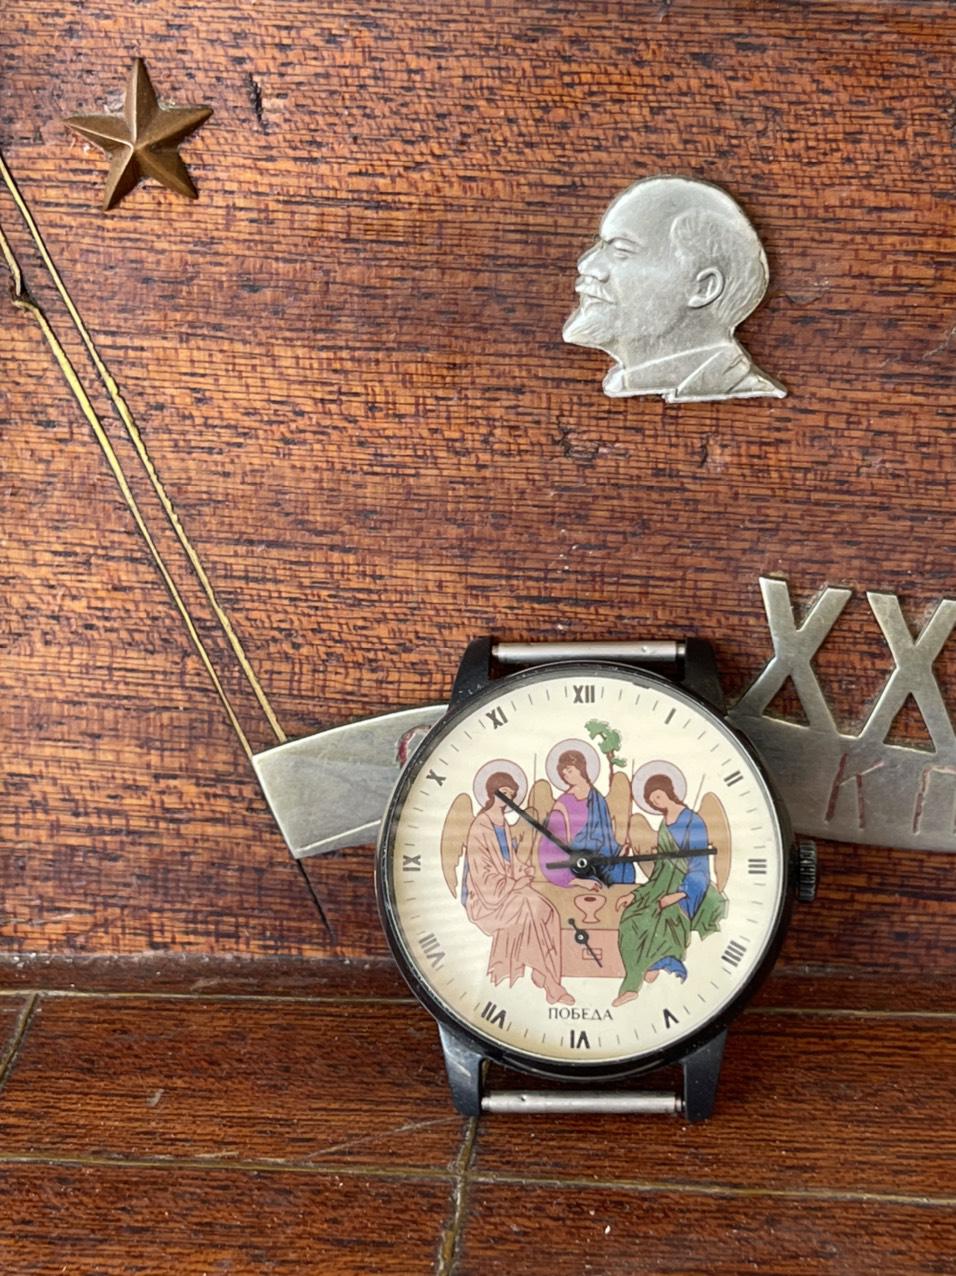 Đồng hồ đeo tay công giáo - Đồng hồ cổ Pabeda